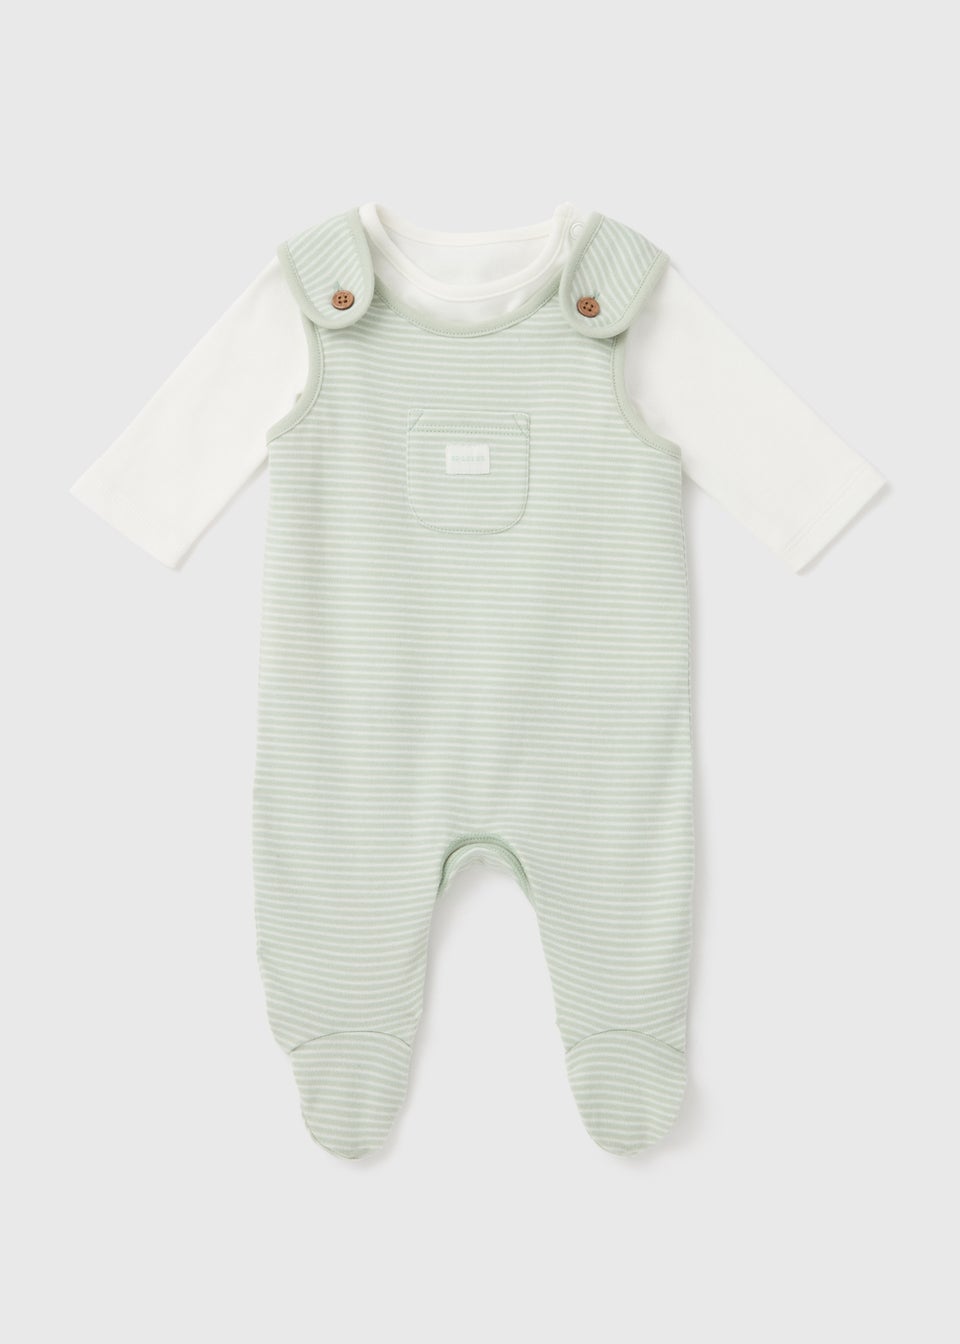 Baby Sage Stripe Dungaree Set (Newborn-12mths)